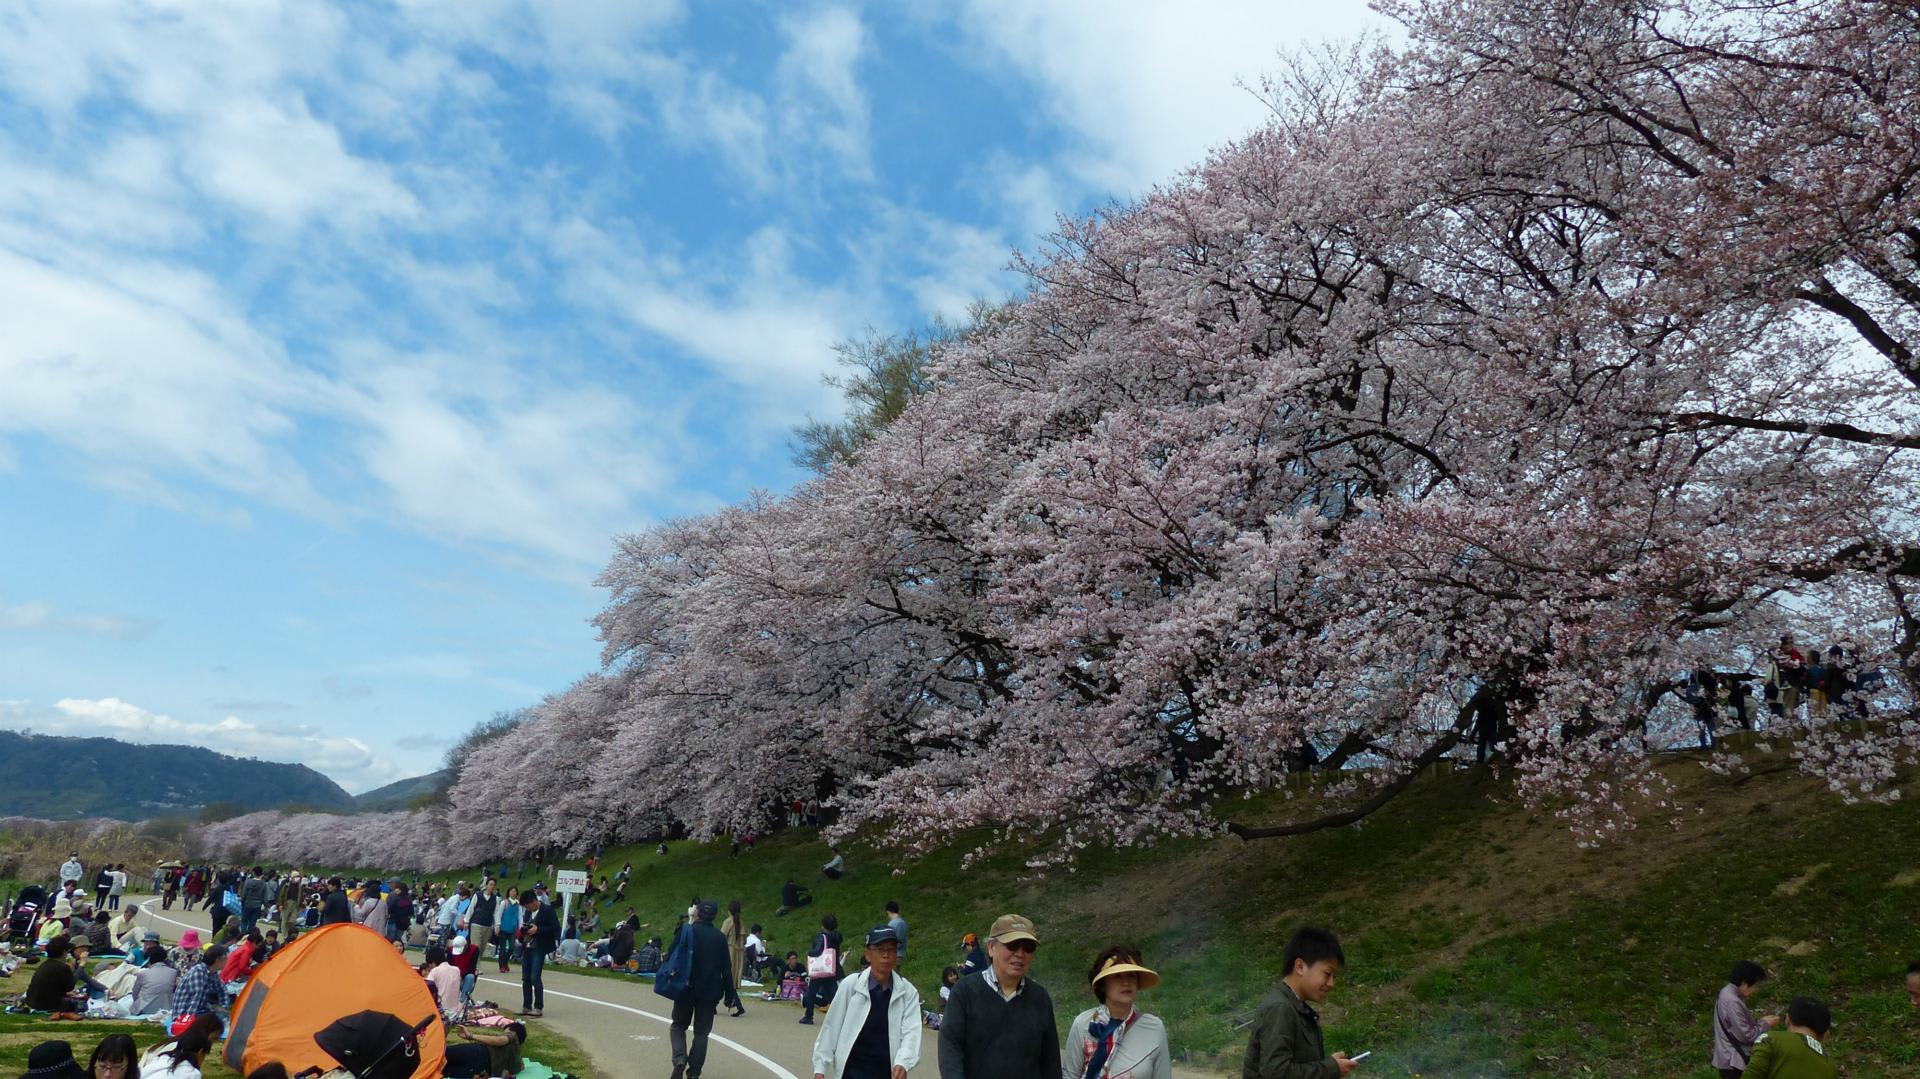 京都の桜 16 4 2 八幡 背割提 の桜 関西お花見ランキング4位 まじくんママのぷち旅ぶろぐ